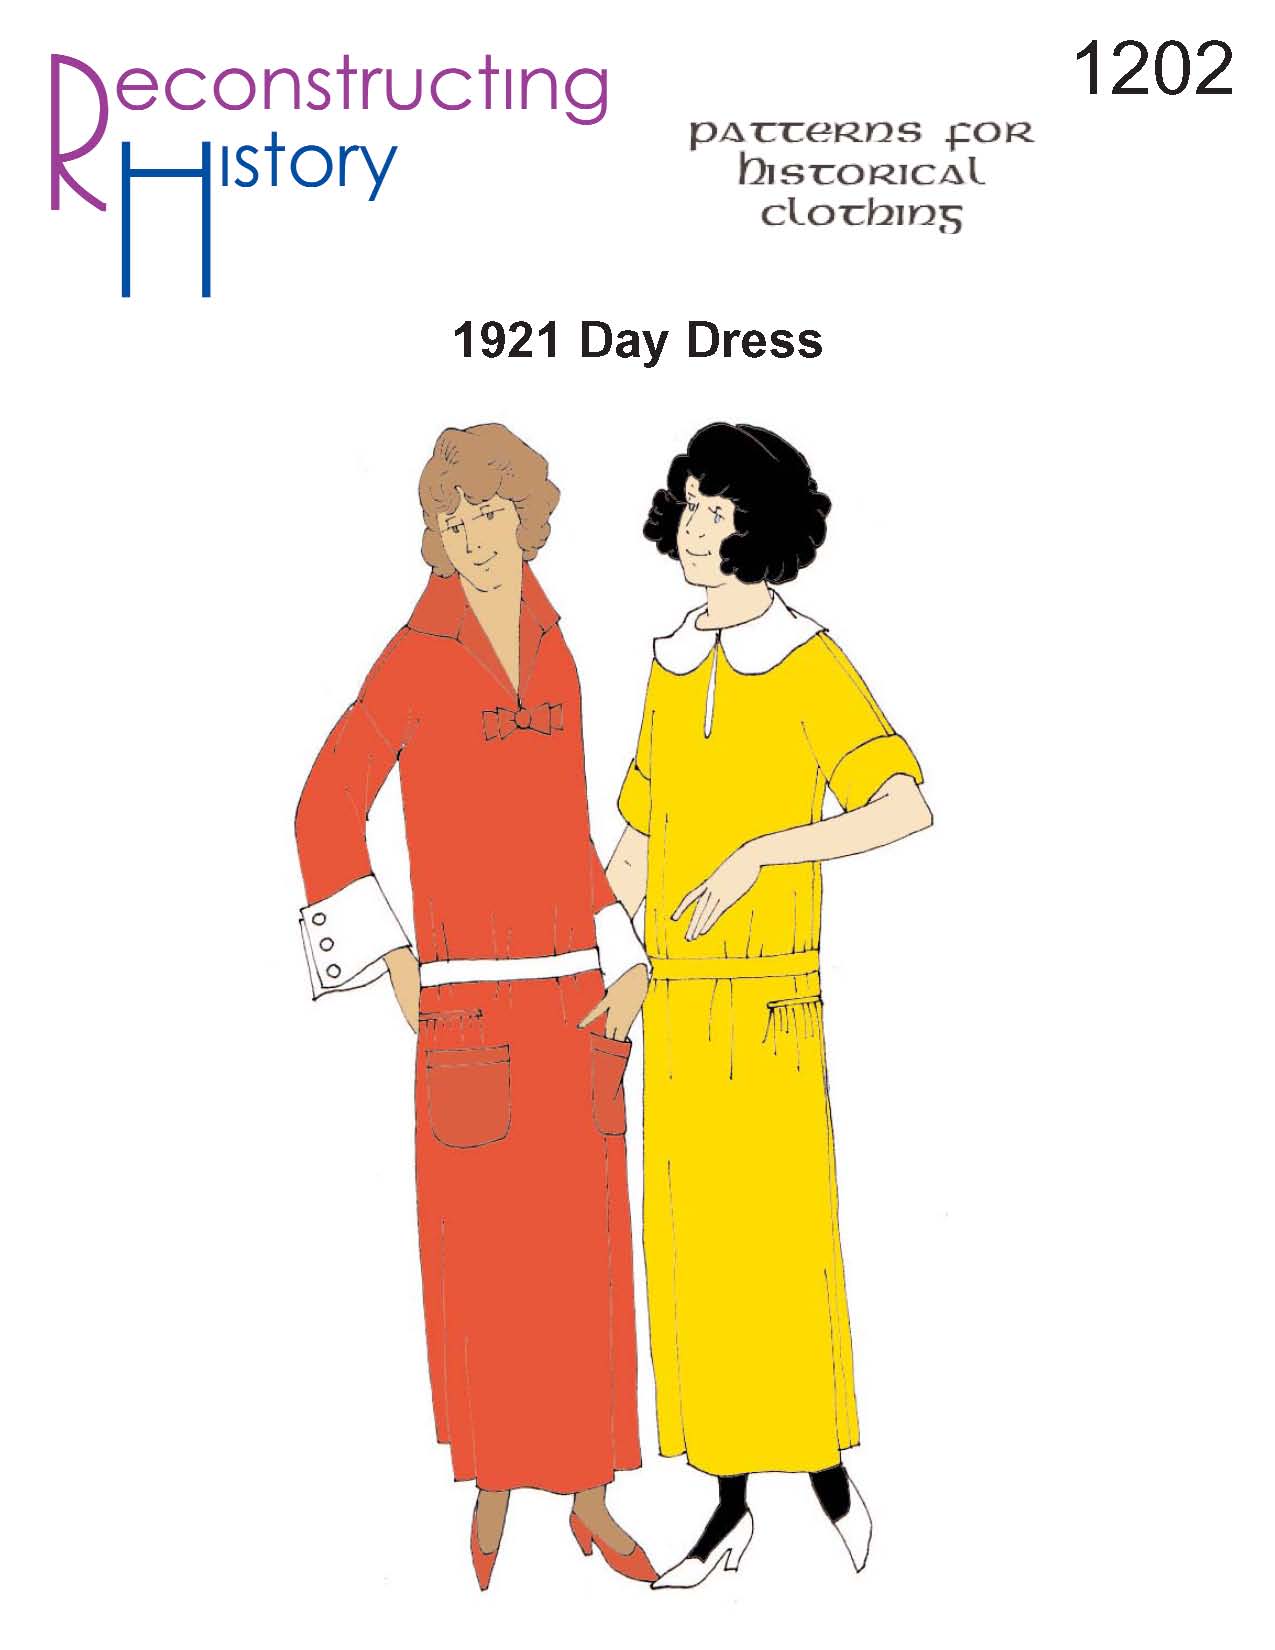 RH 1202 1921 Day Dress II